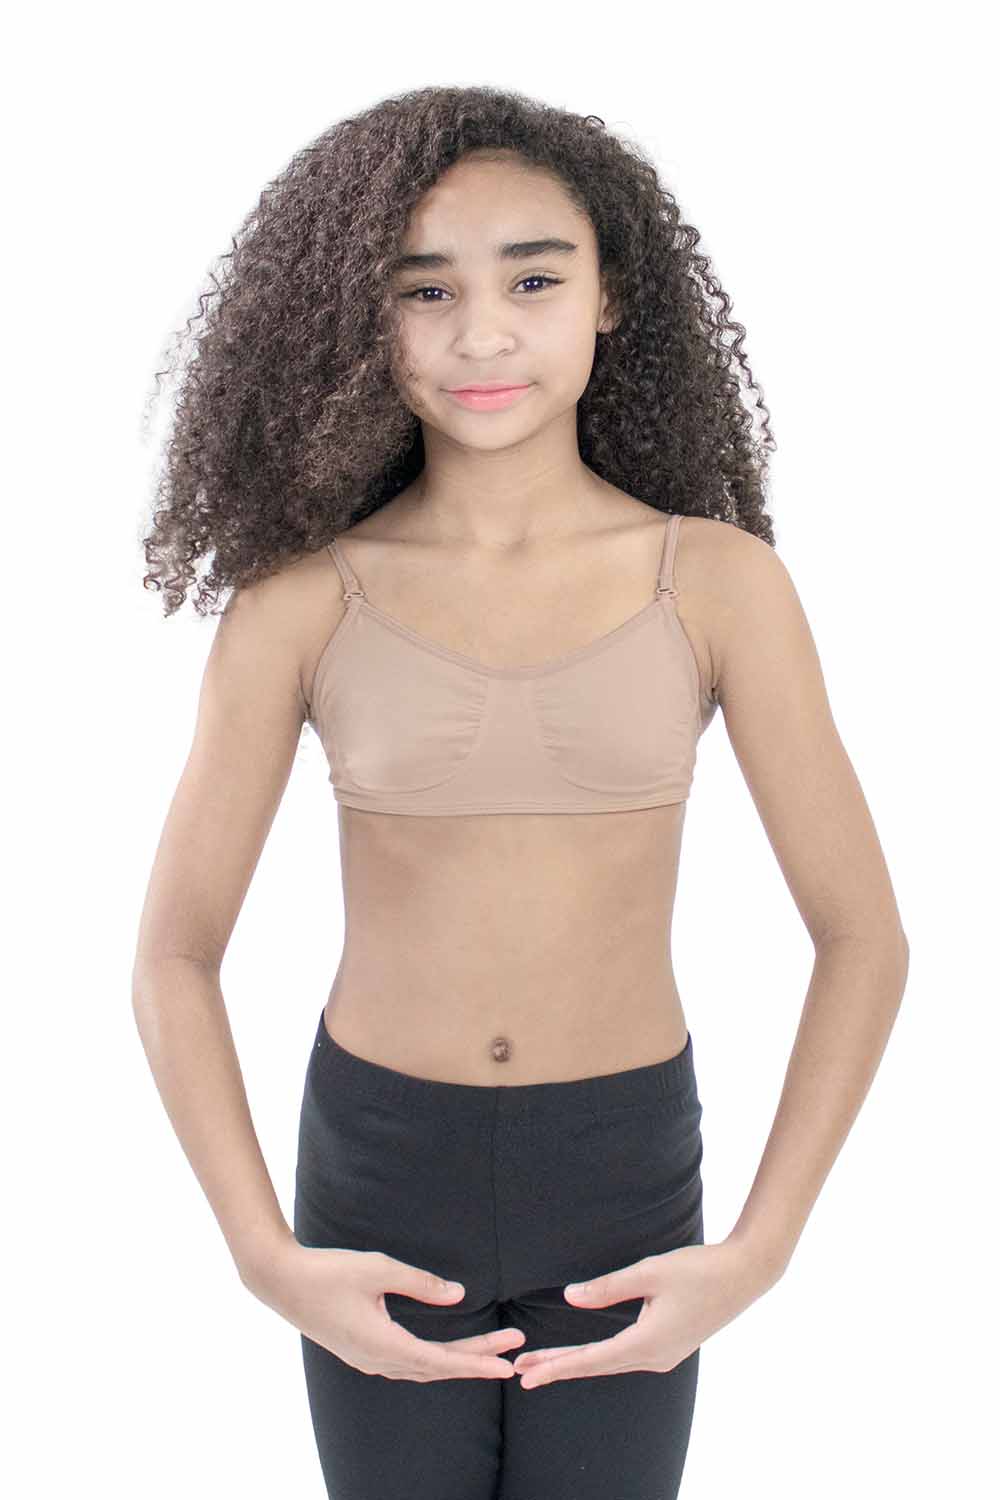 Wholesale girls not wear bra For Supportive Underwear 